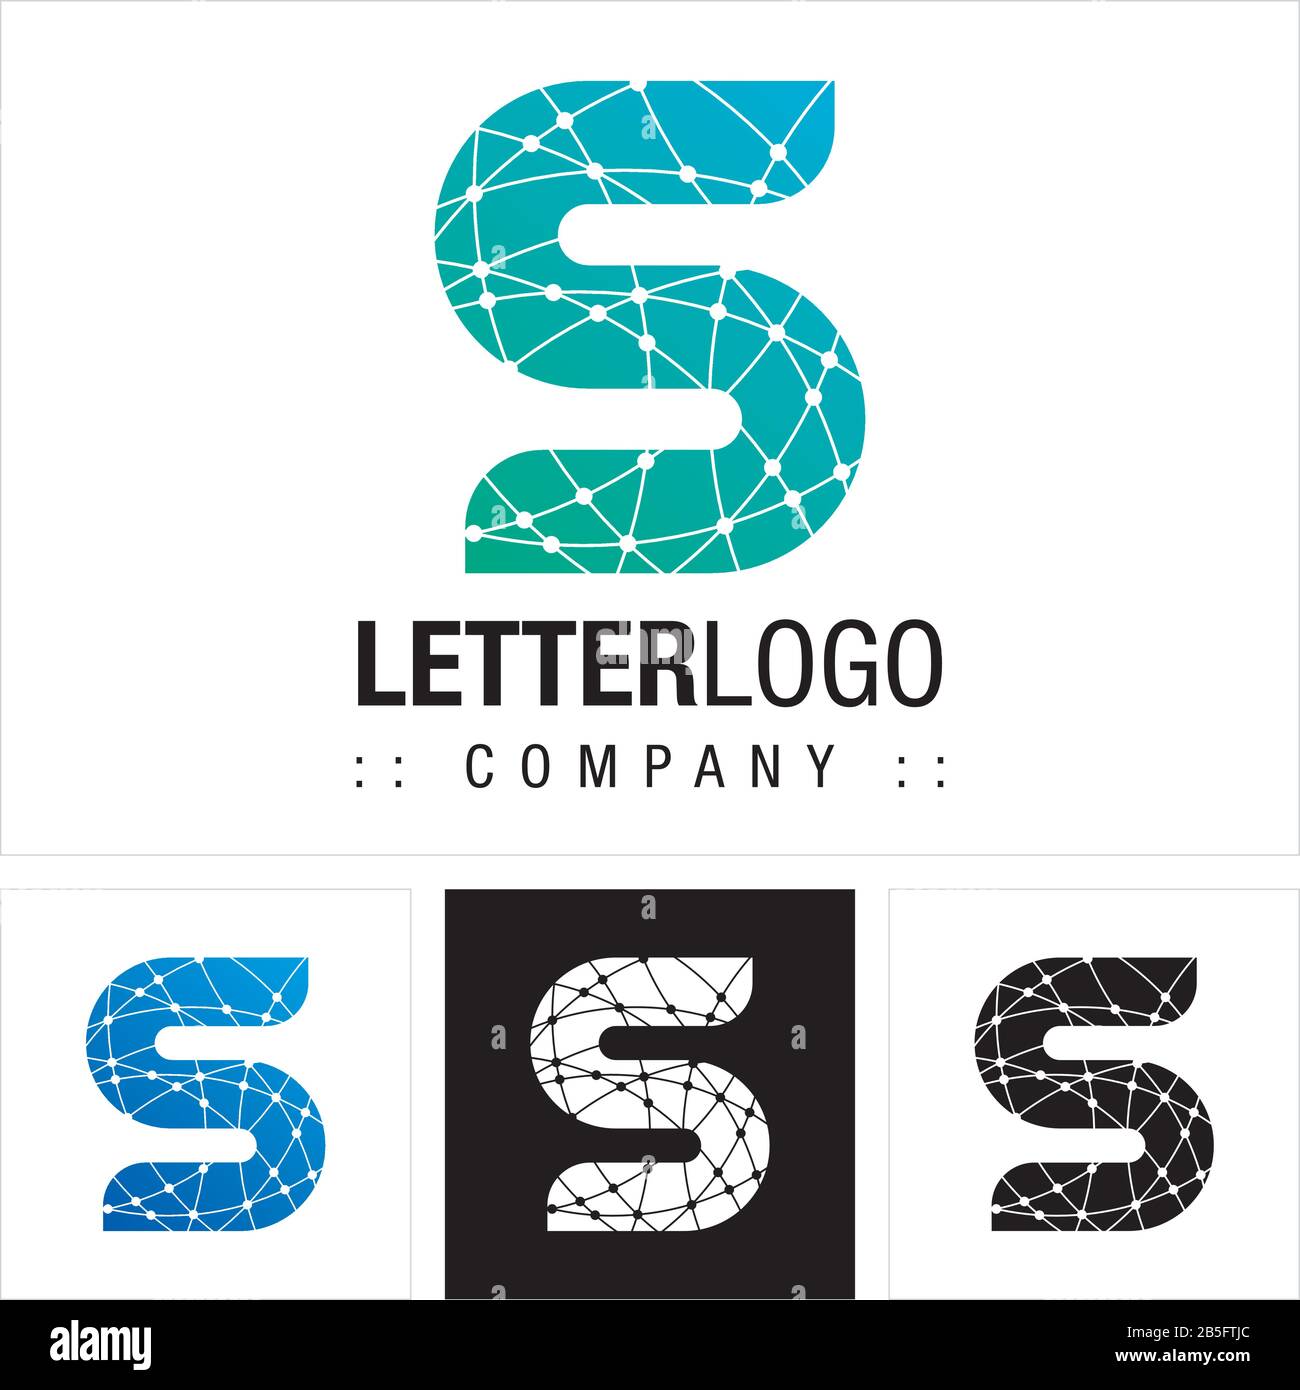 Logo (Logotipo) Di Letter S (Tipografia) Vector Symbol Company. Illustrazione Dell'Icona Stile Tecnologia Dei Connettori Della Scheda Madre. Concetto Di Identità Elegante Illustrazione Vettoriale